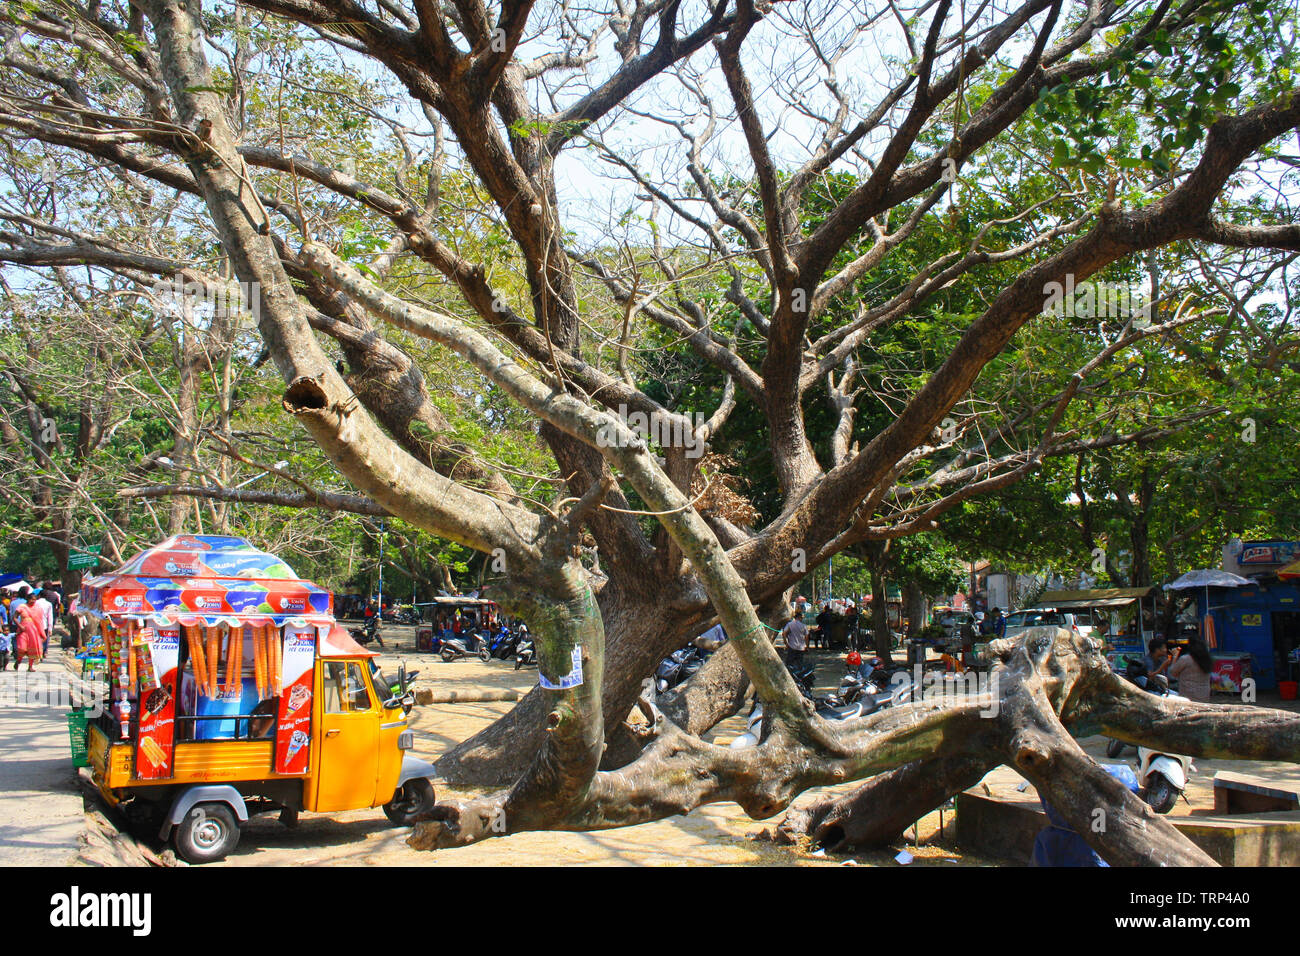 Bunte tuk tuk Eis Lkw am Strand von der touristischen Vergangenheit von Cochin (Kochi) Indien geparkt für ein kaltes erfrischende behandeln in der Hitze Stockfoto